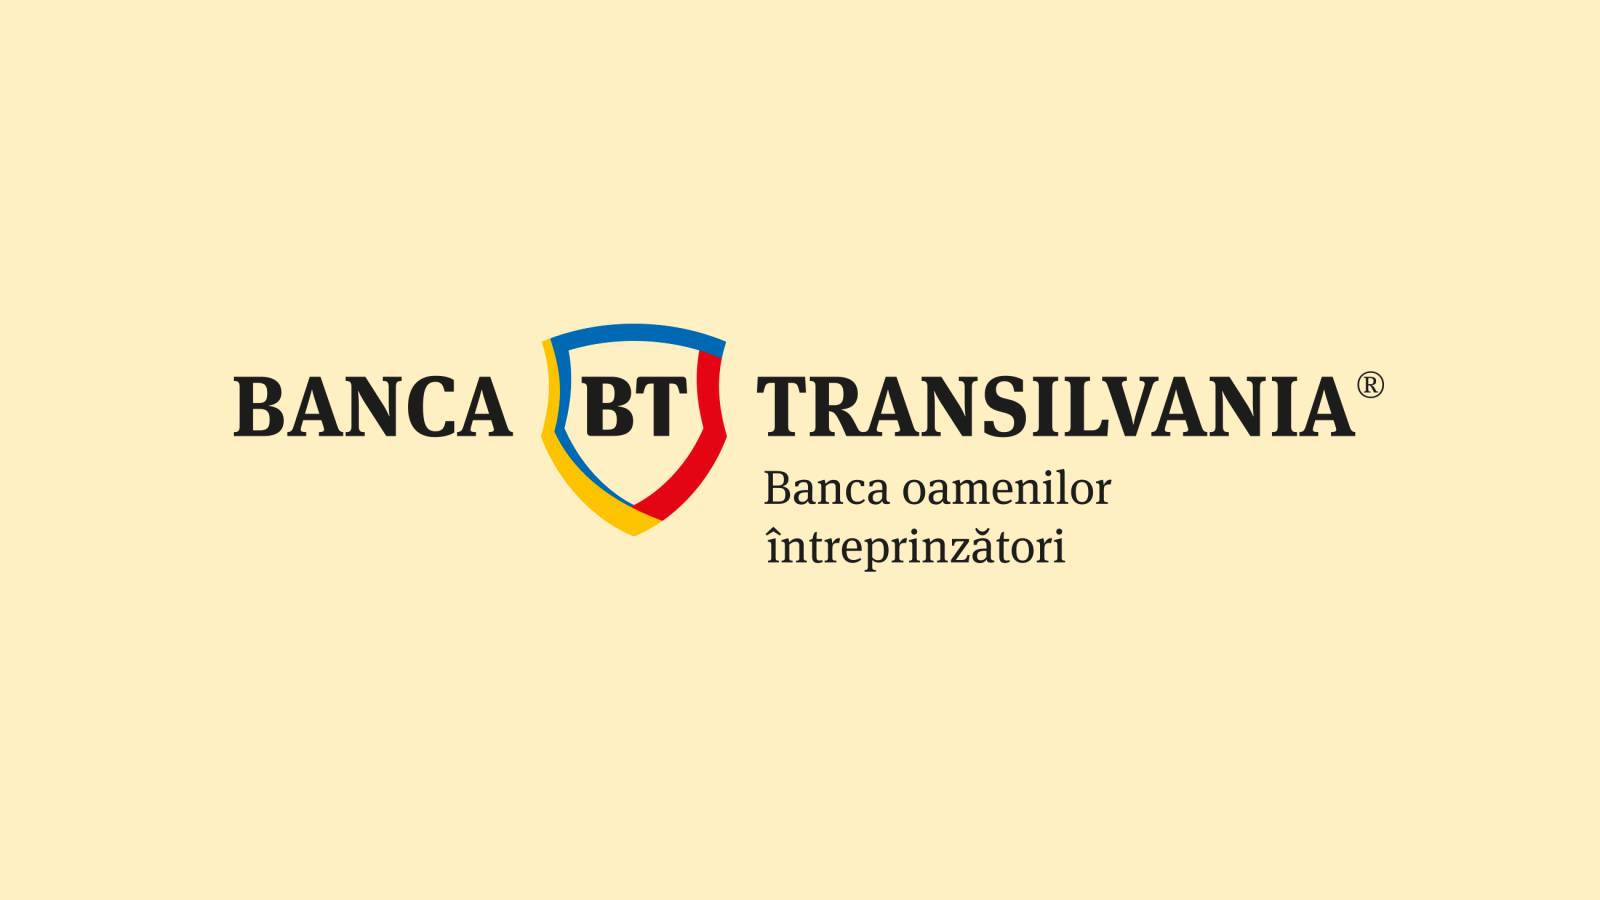 BANCA Transilvania lähettää virallisesti TÄRKEÄN ilmoituksen asiakkaille tänään